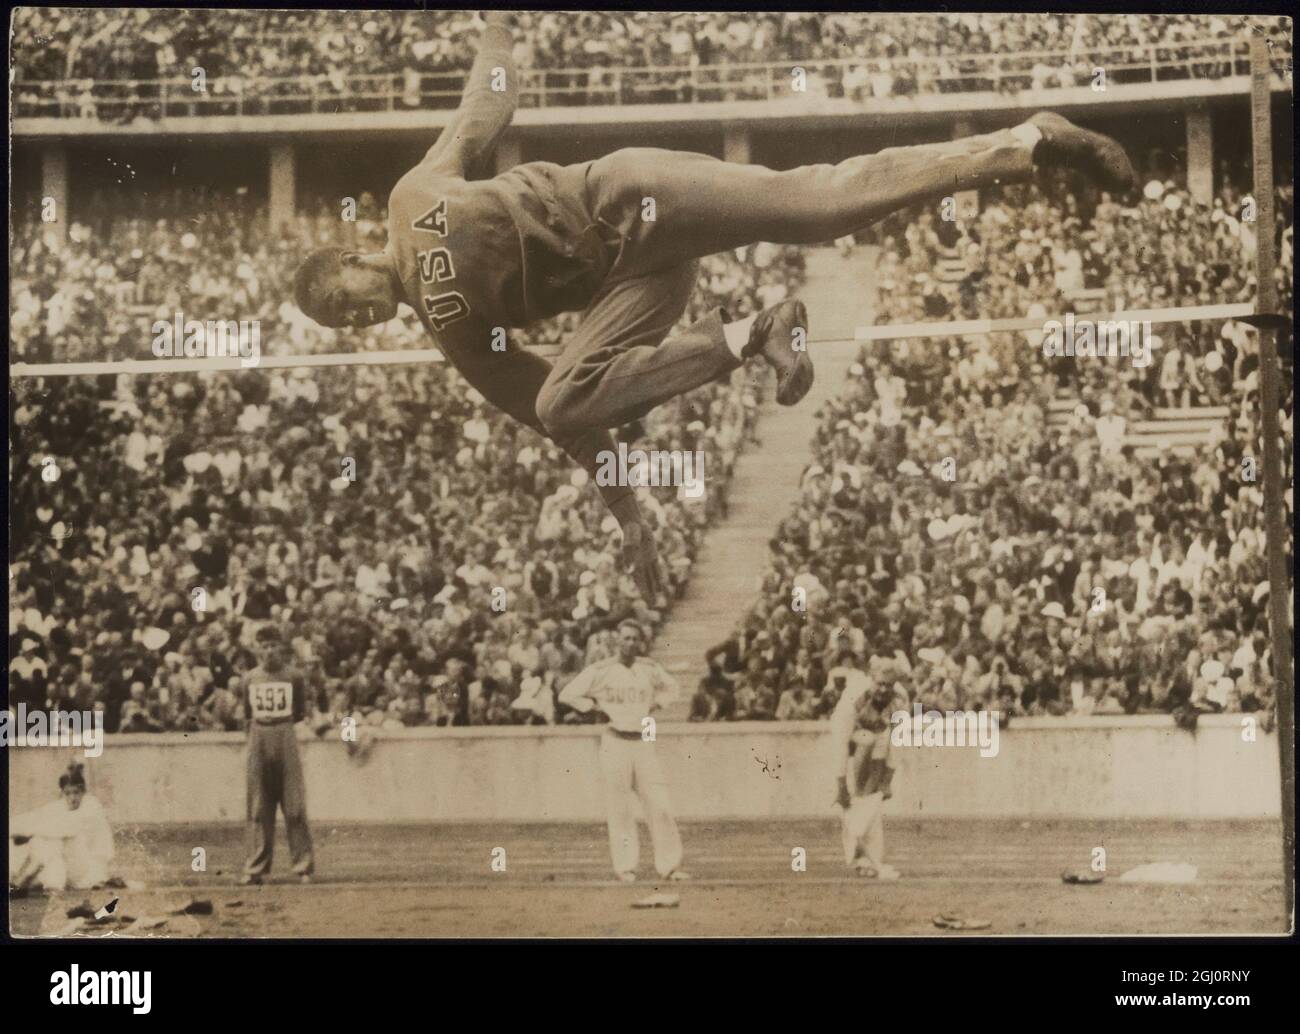 WELTREKORDBRECHER IN AKTION FOTO ZEIGT: - Ein großartiges Action-Bild von Cornelius Johnson, ein amerikanischer Athlet, so dass der Sprung von 6 Fuß 8 Zoll, die ihm den Sieg in den Olympischen Spielen High Jump Finale und etablierte eine neue Welt €™s Rekord. Berlin, Deutschland 4. August 1936 Stockfoto